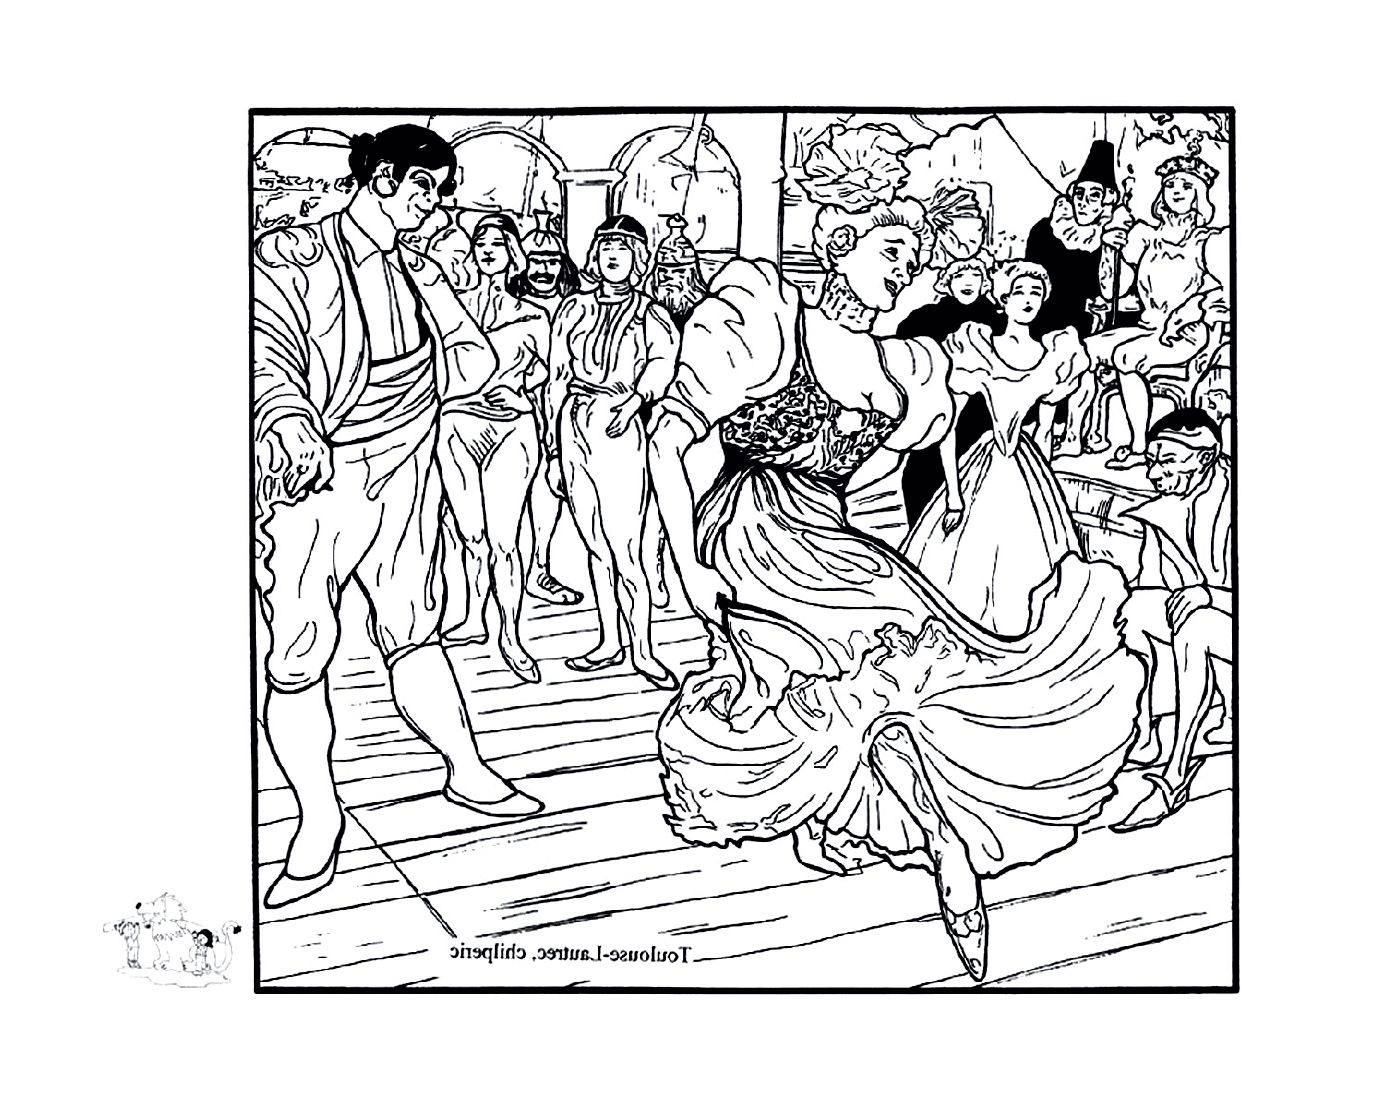  persone che ballano ad una festa come Toulouse-Lautrec 